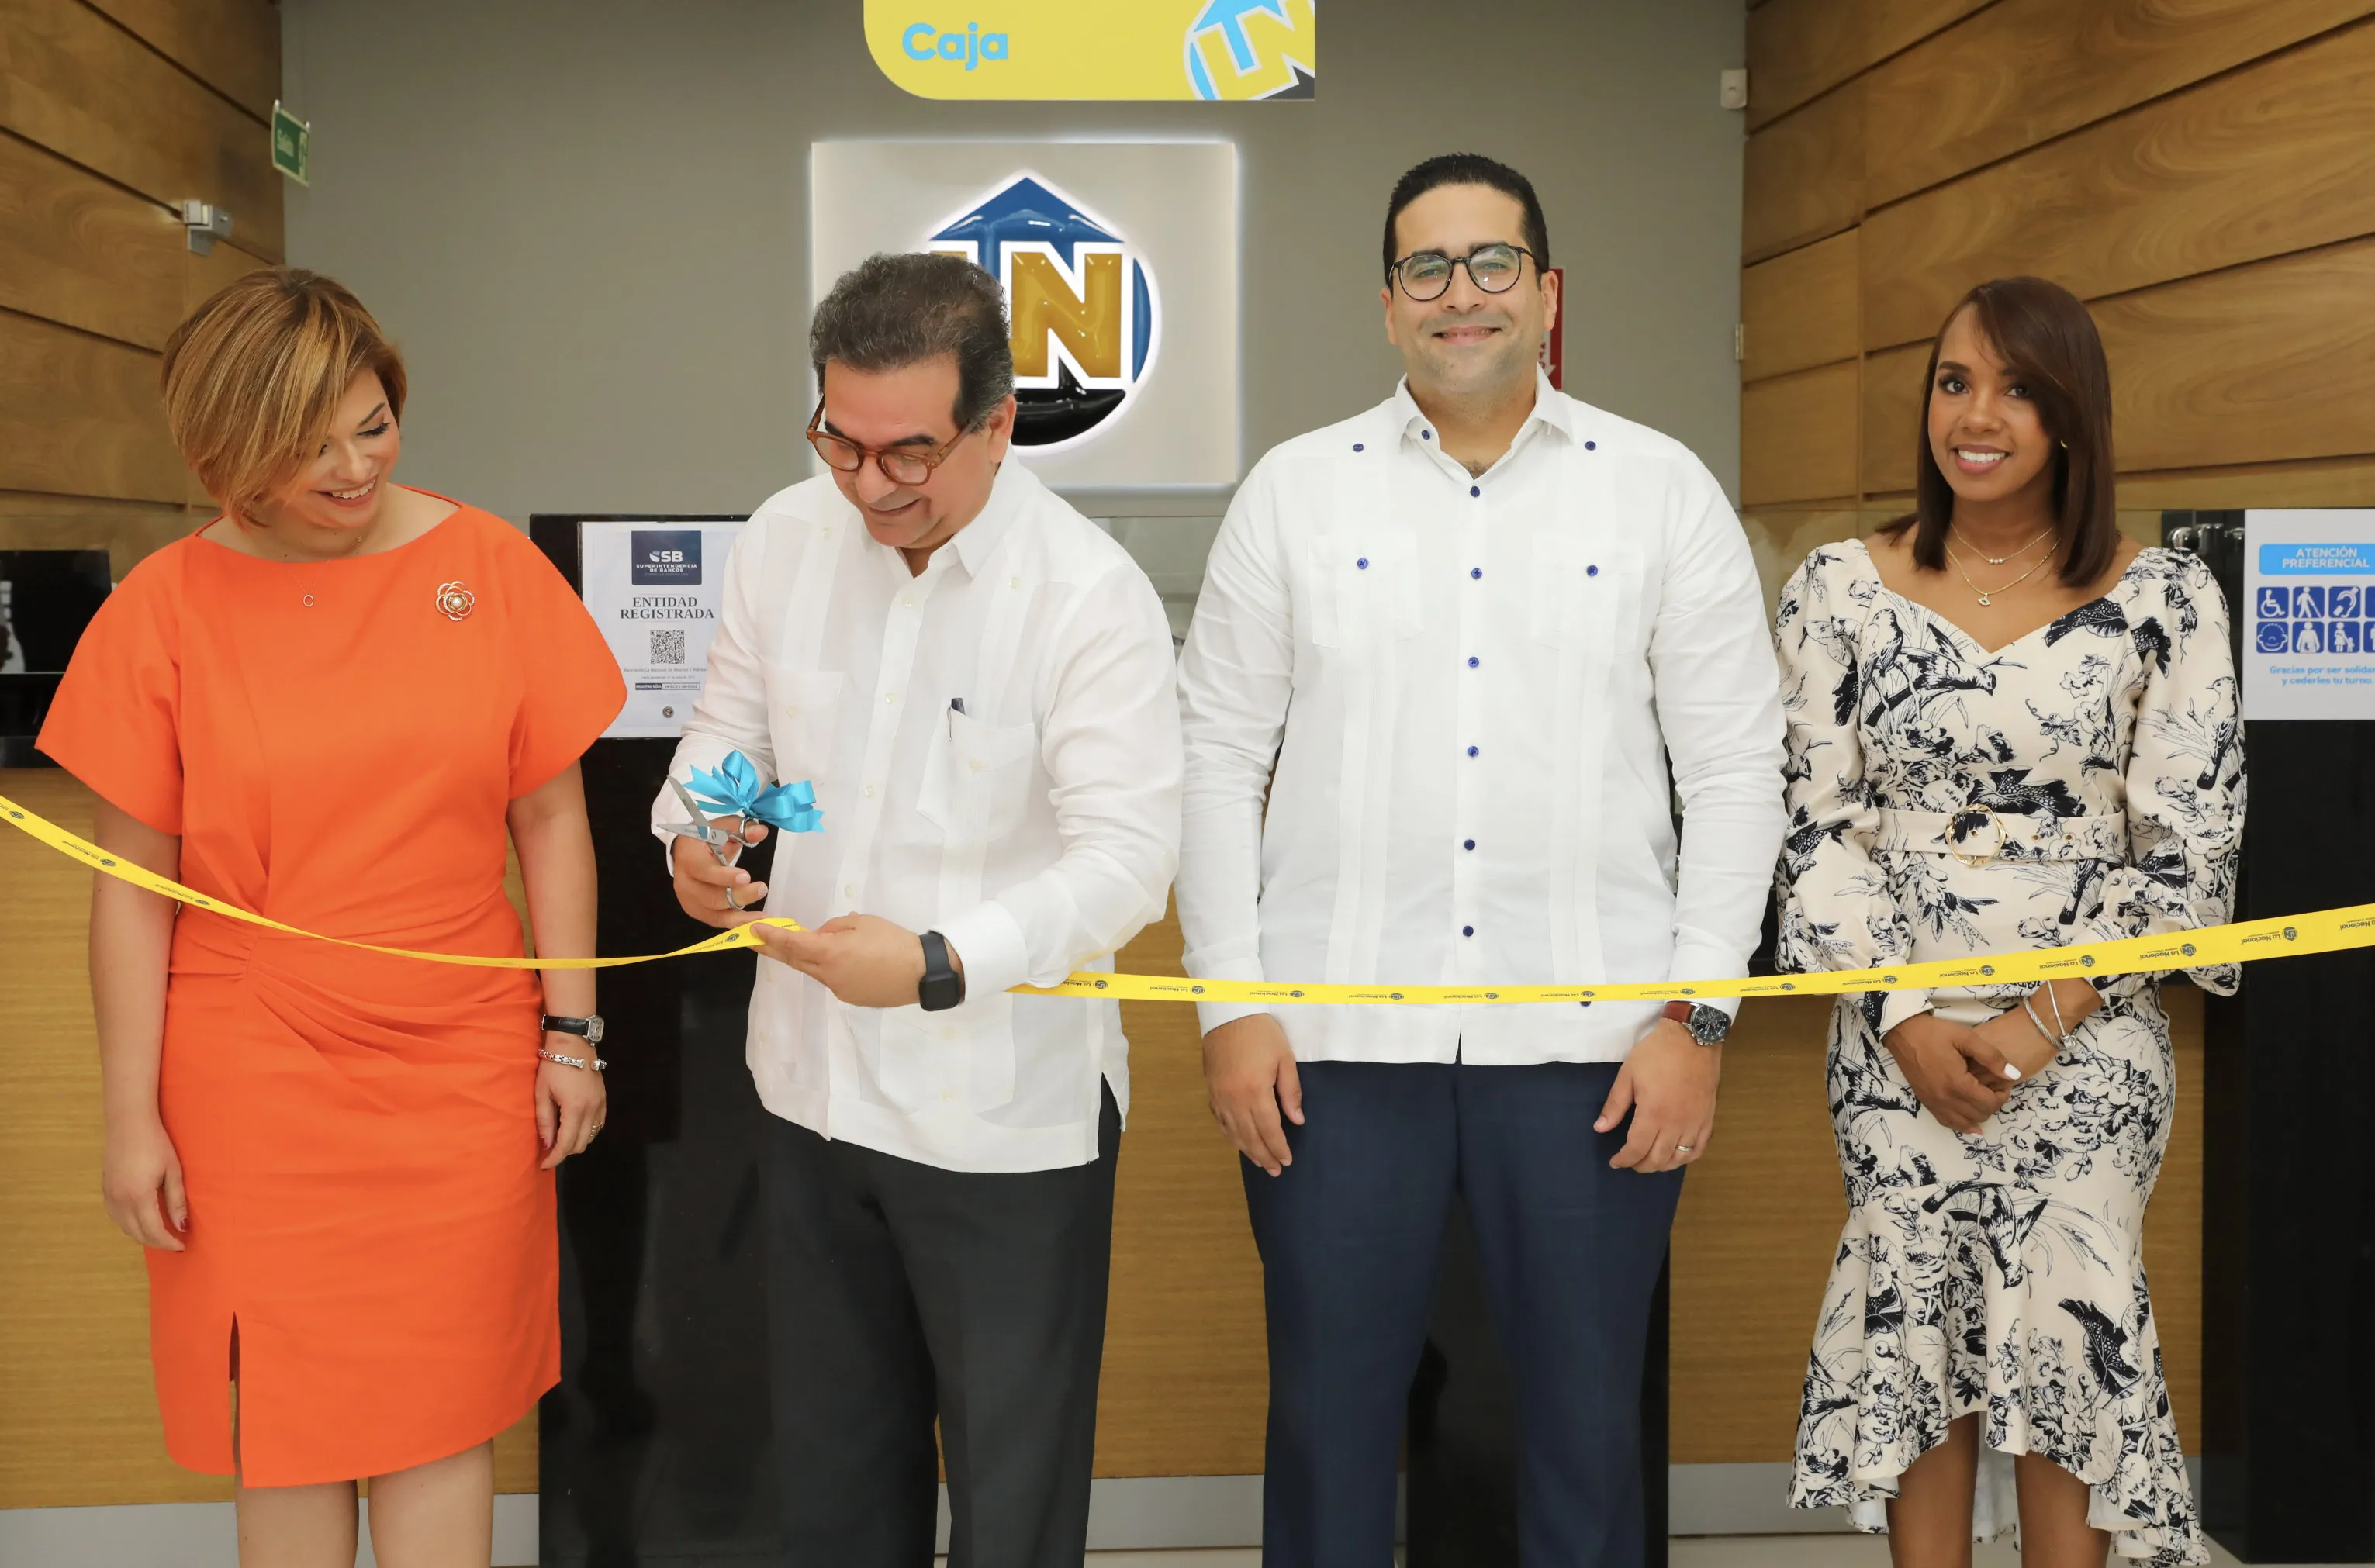 Asociación La Nacional expande sus servicios en Santo Domingo Norte con nueva sucursal en la Plaza Colina Centro